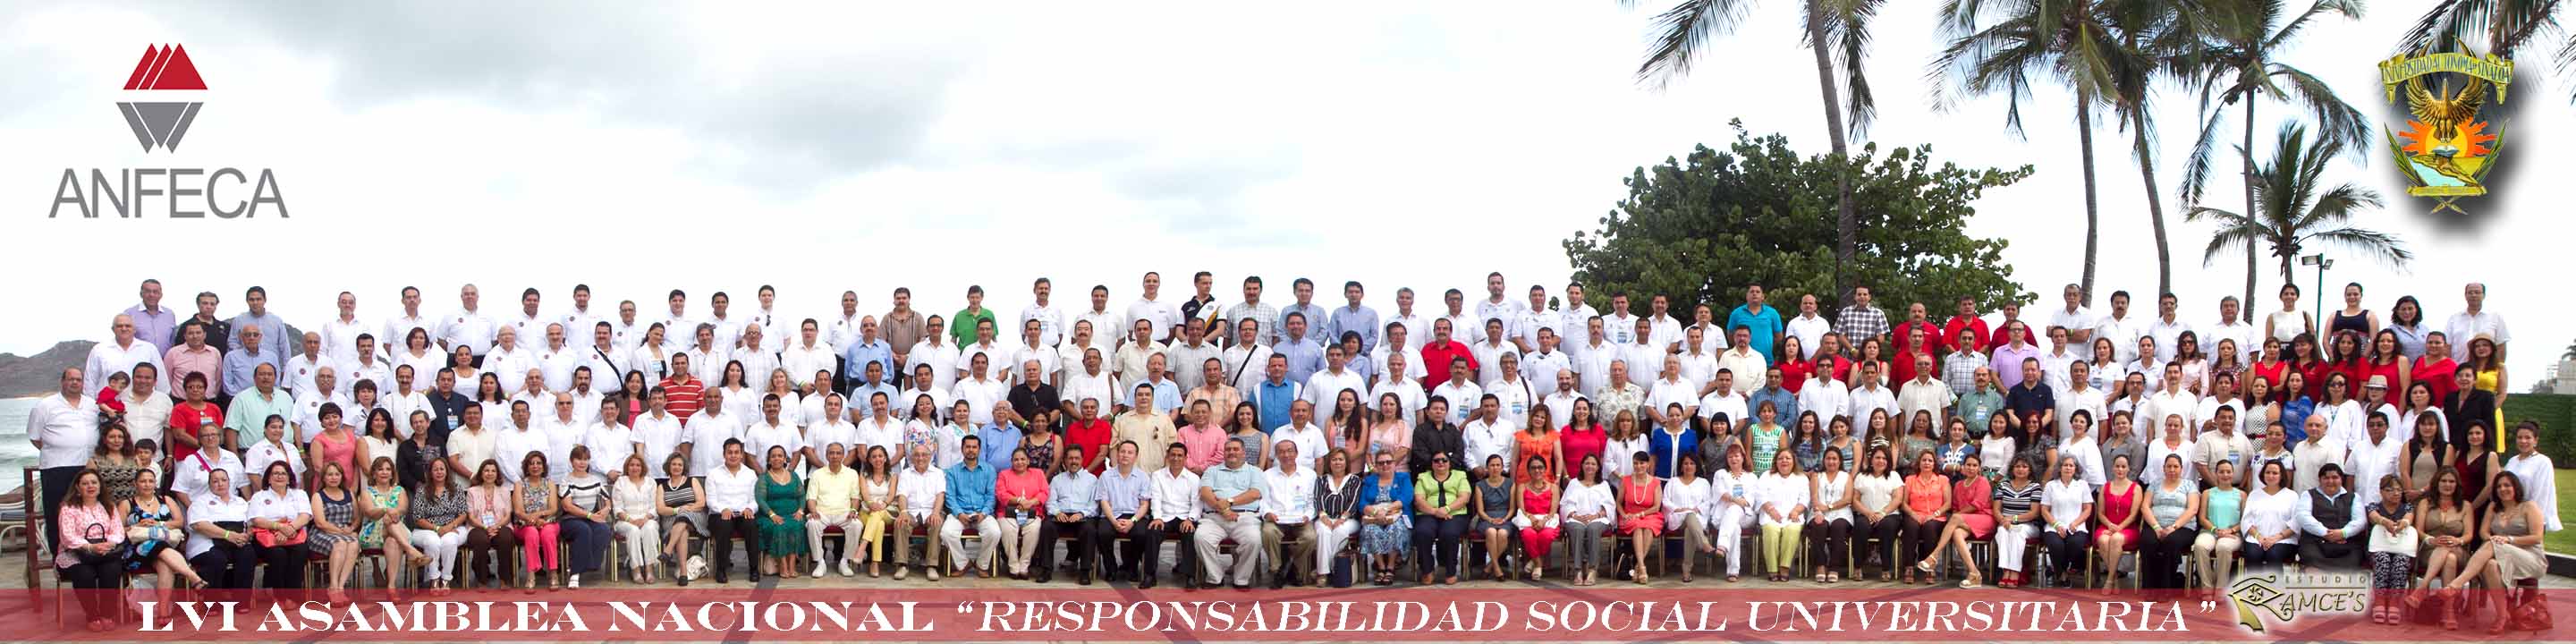 Foto Oficial LVI Asamblea Nacional ANFECA 2015